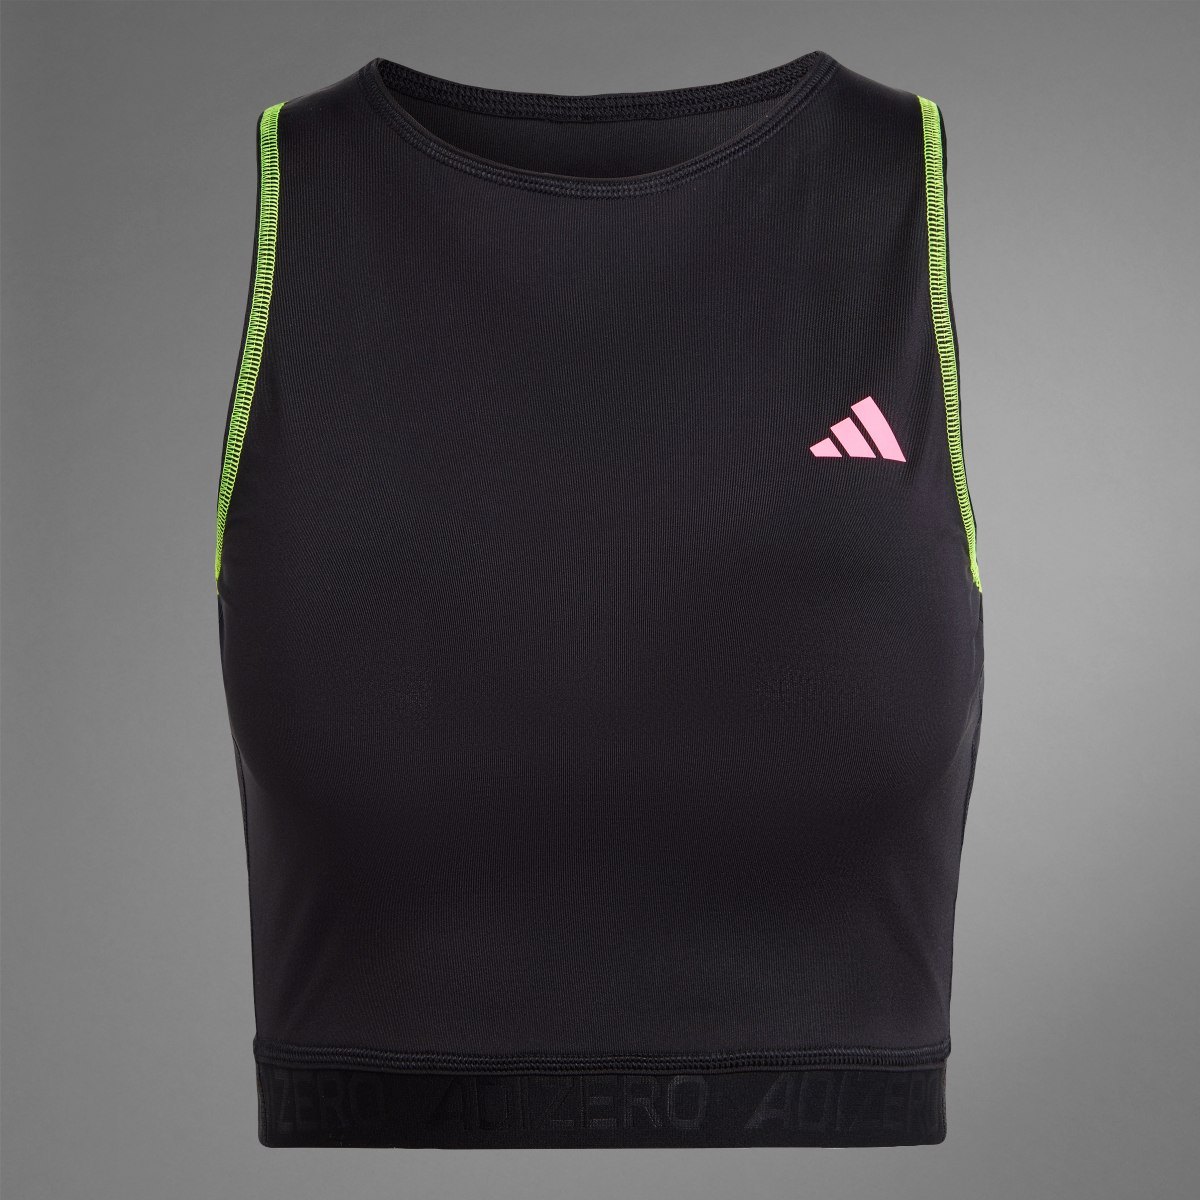 Adidas Camisola de Alças para Running Adizero. 9